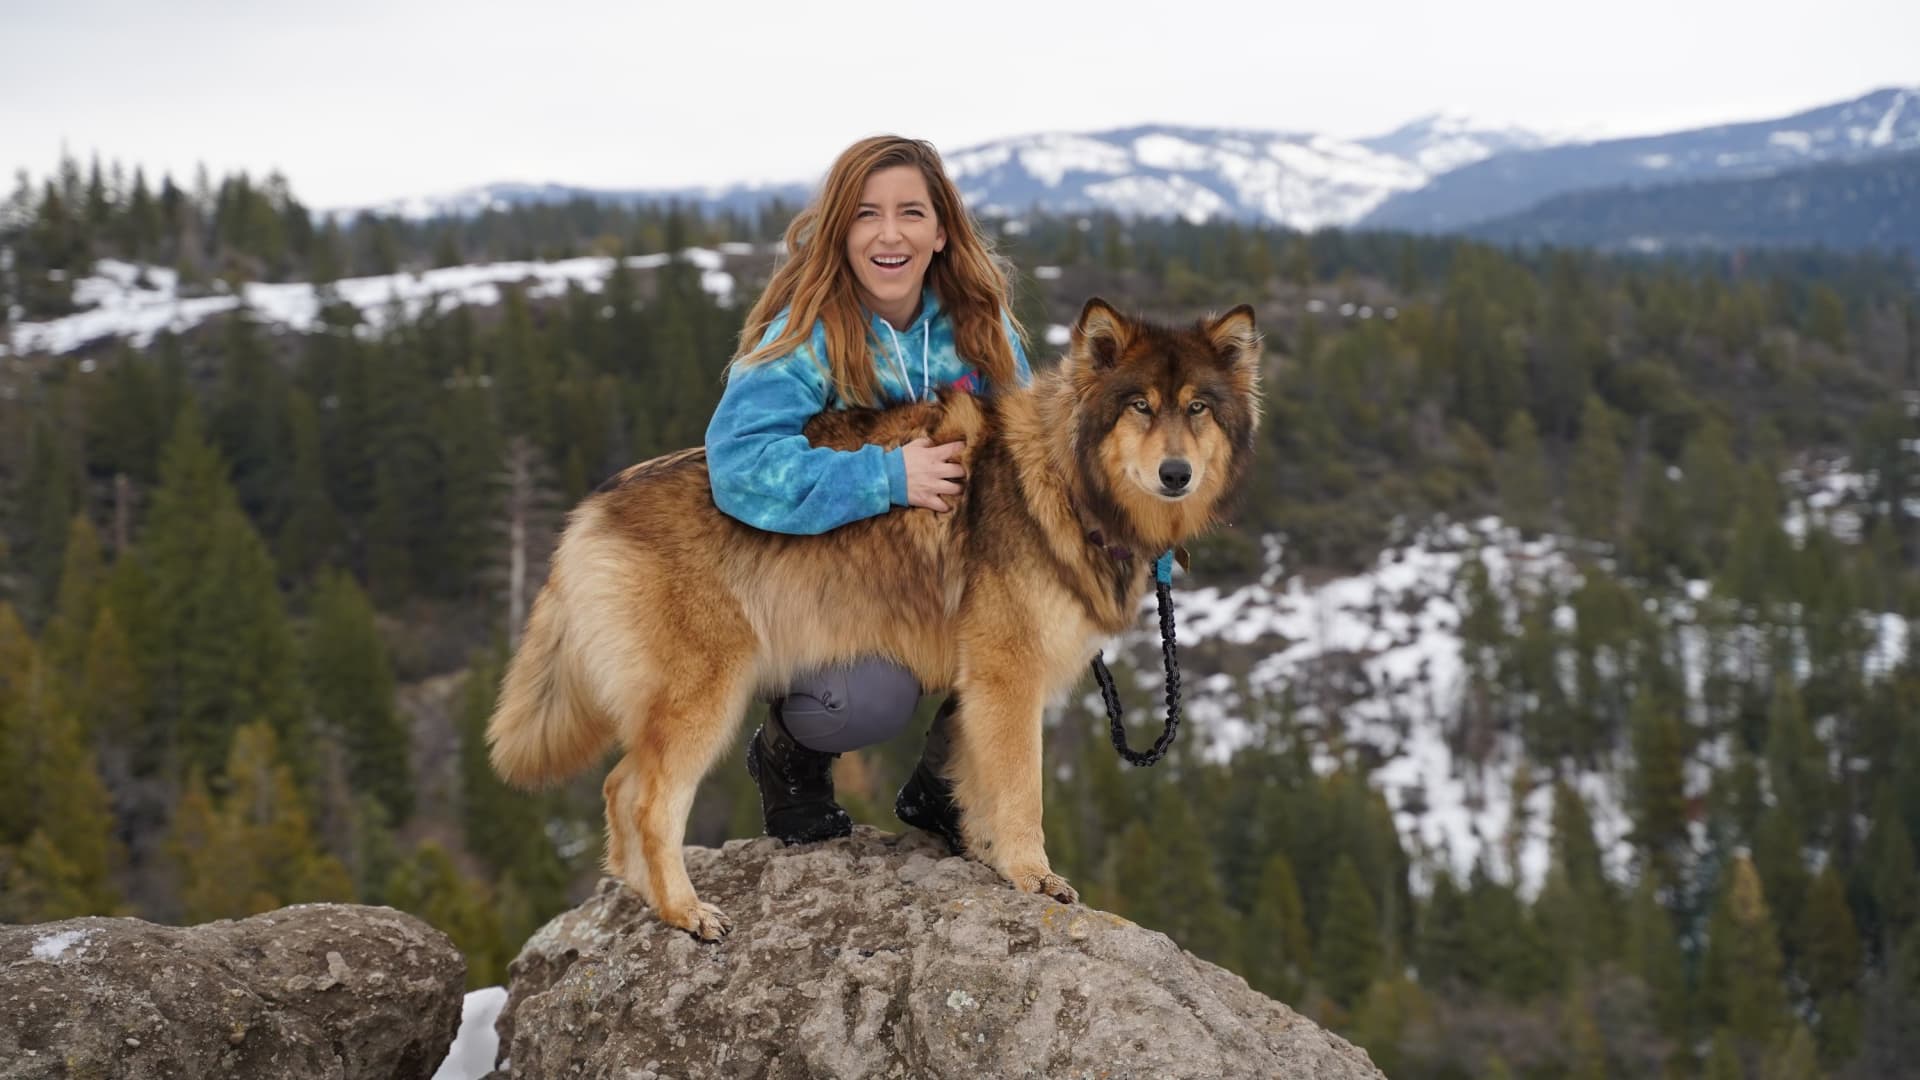 Courtney Udvar-Hazy with Phoenix, a genetic replica of her dog, Willow.